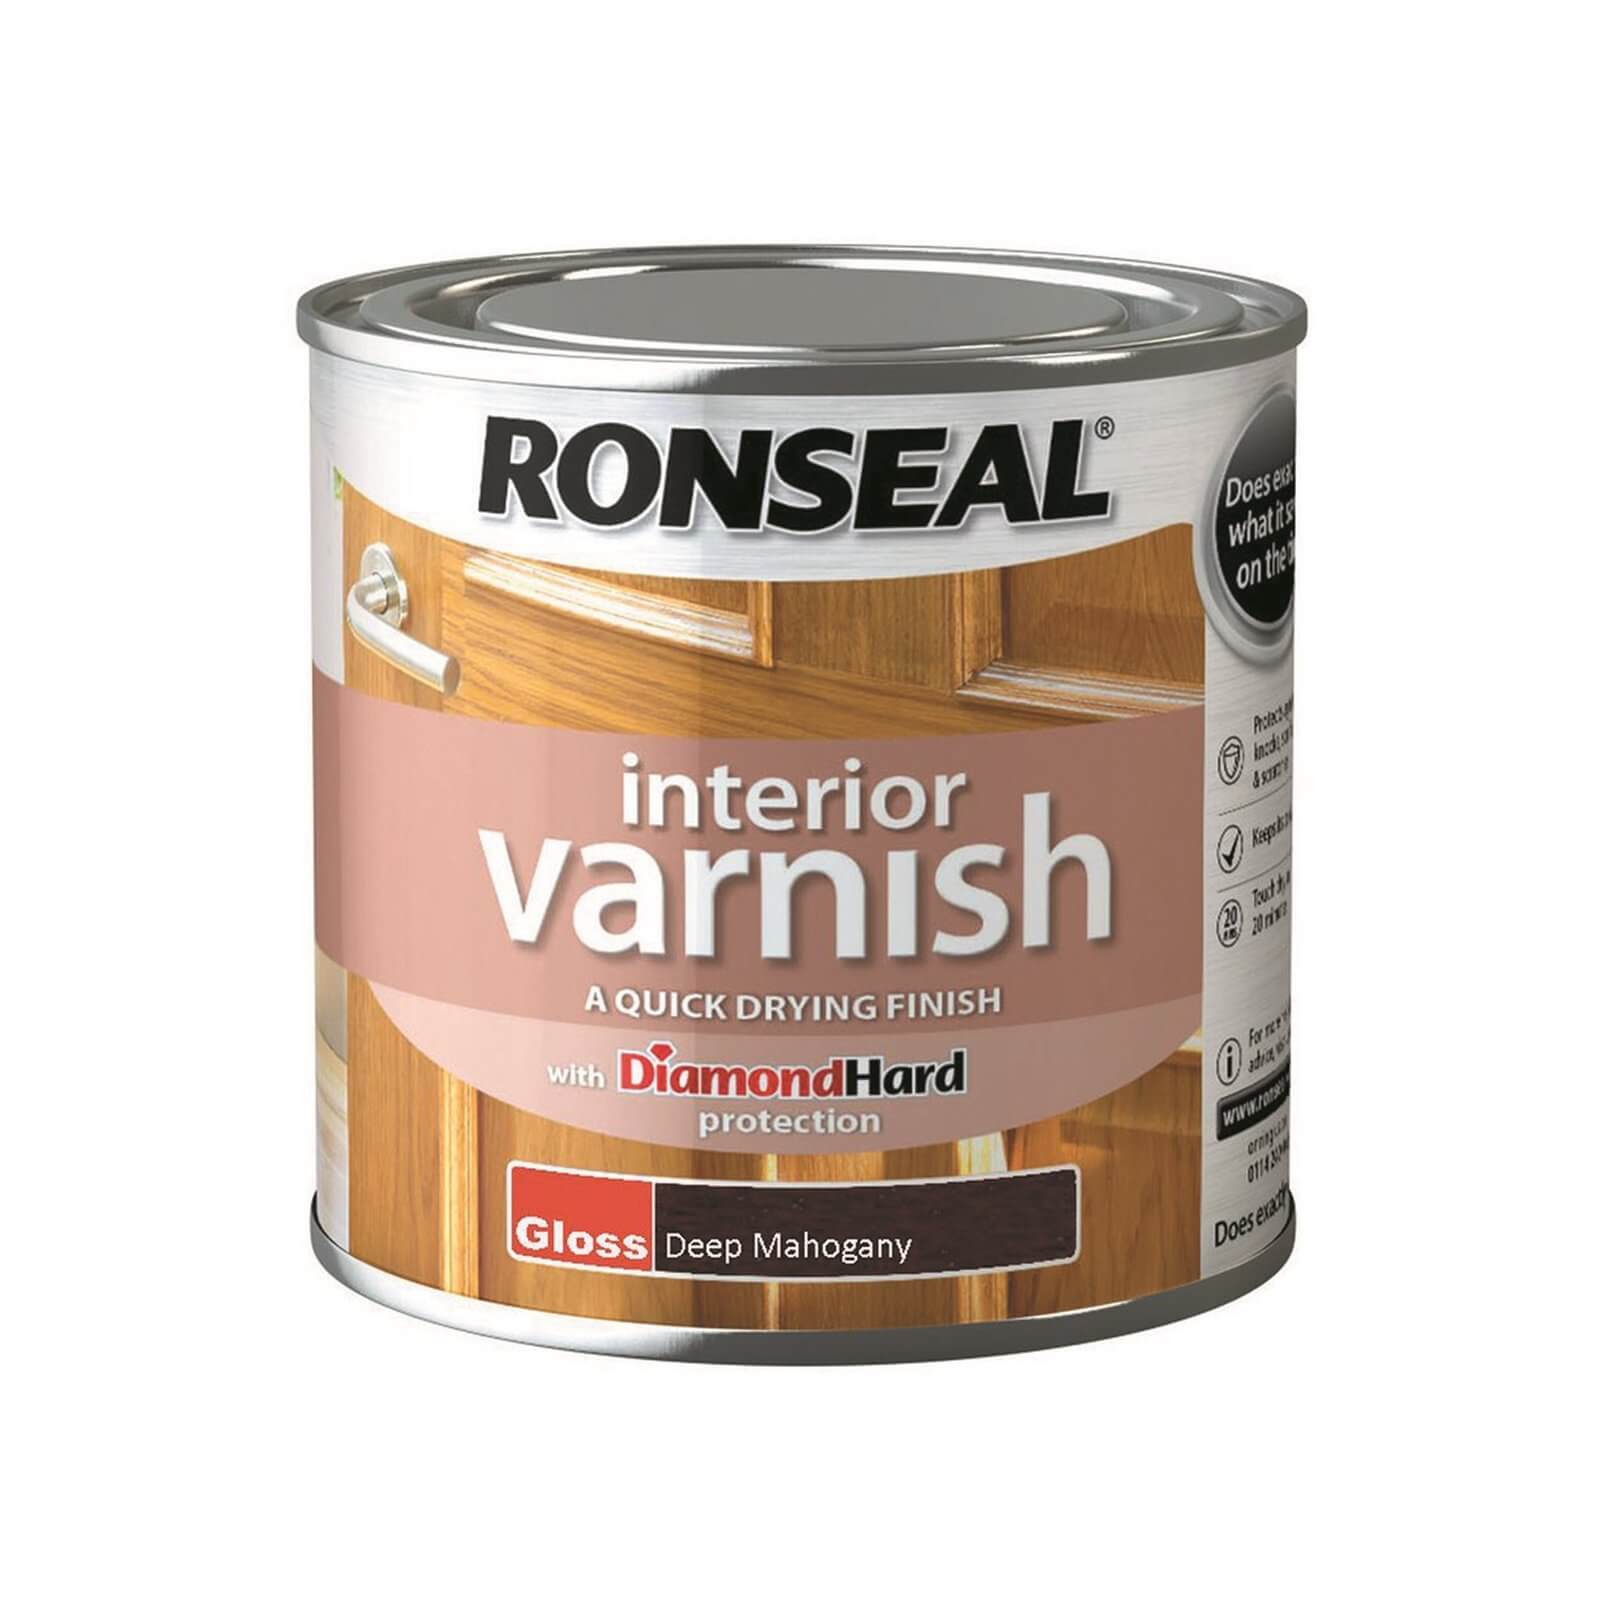 Ronseal Interior Varnish Gloss Deep Mahogany - 250ml